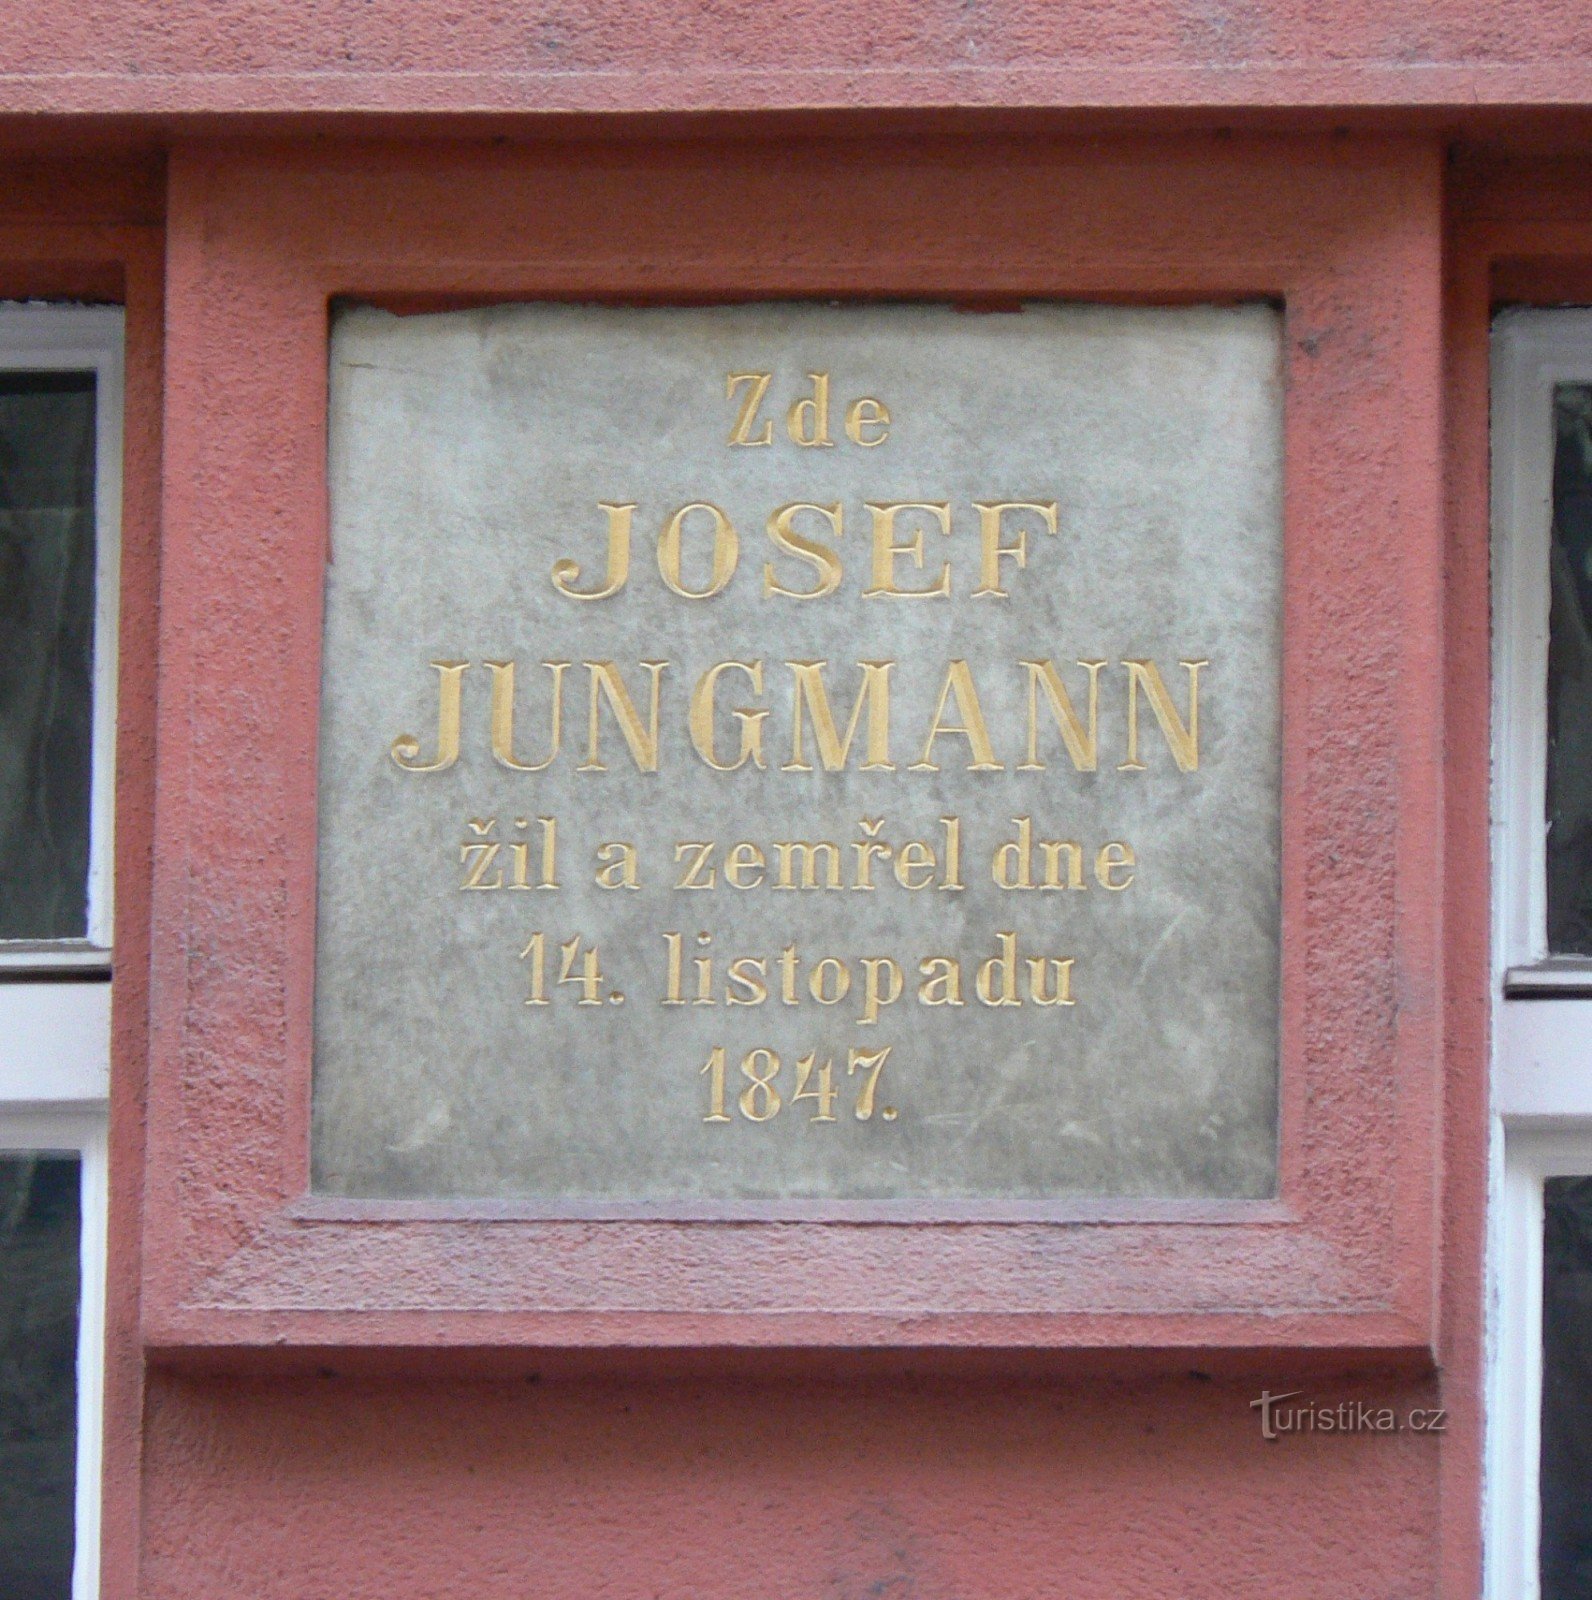 Placa comemorativa de Josef Jungmann